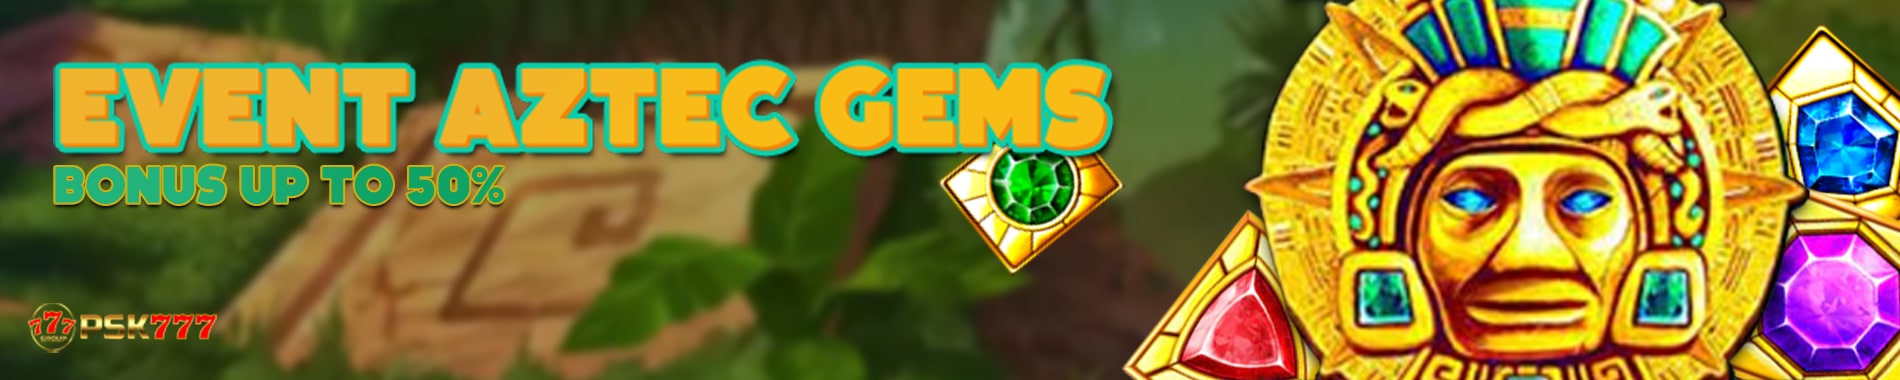 Promo-Aztec-gems